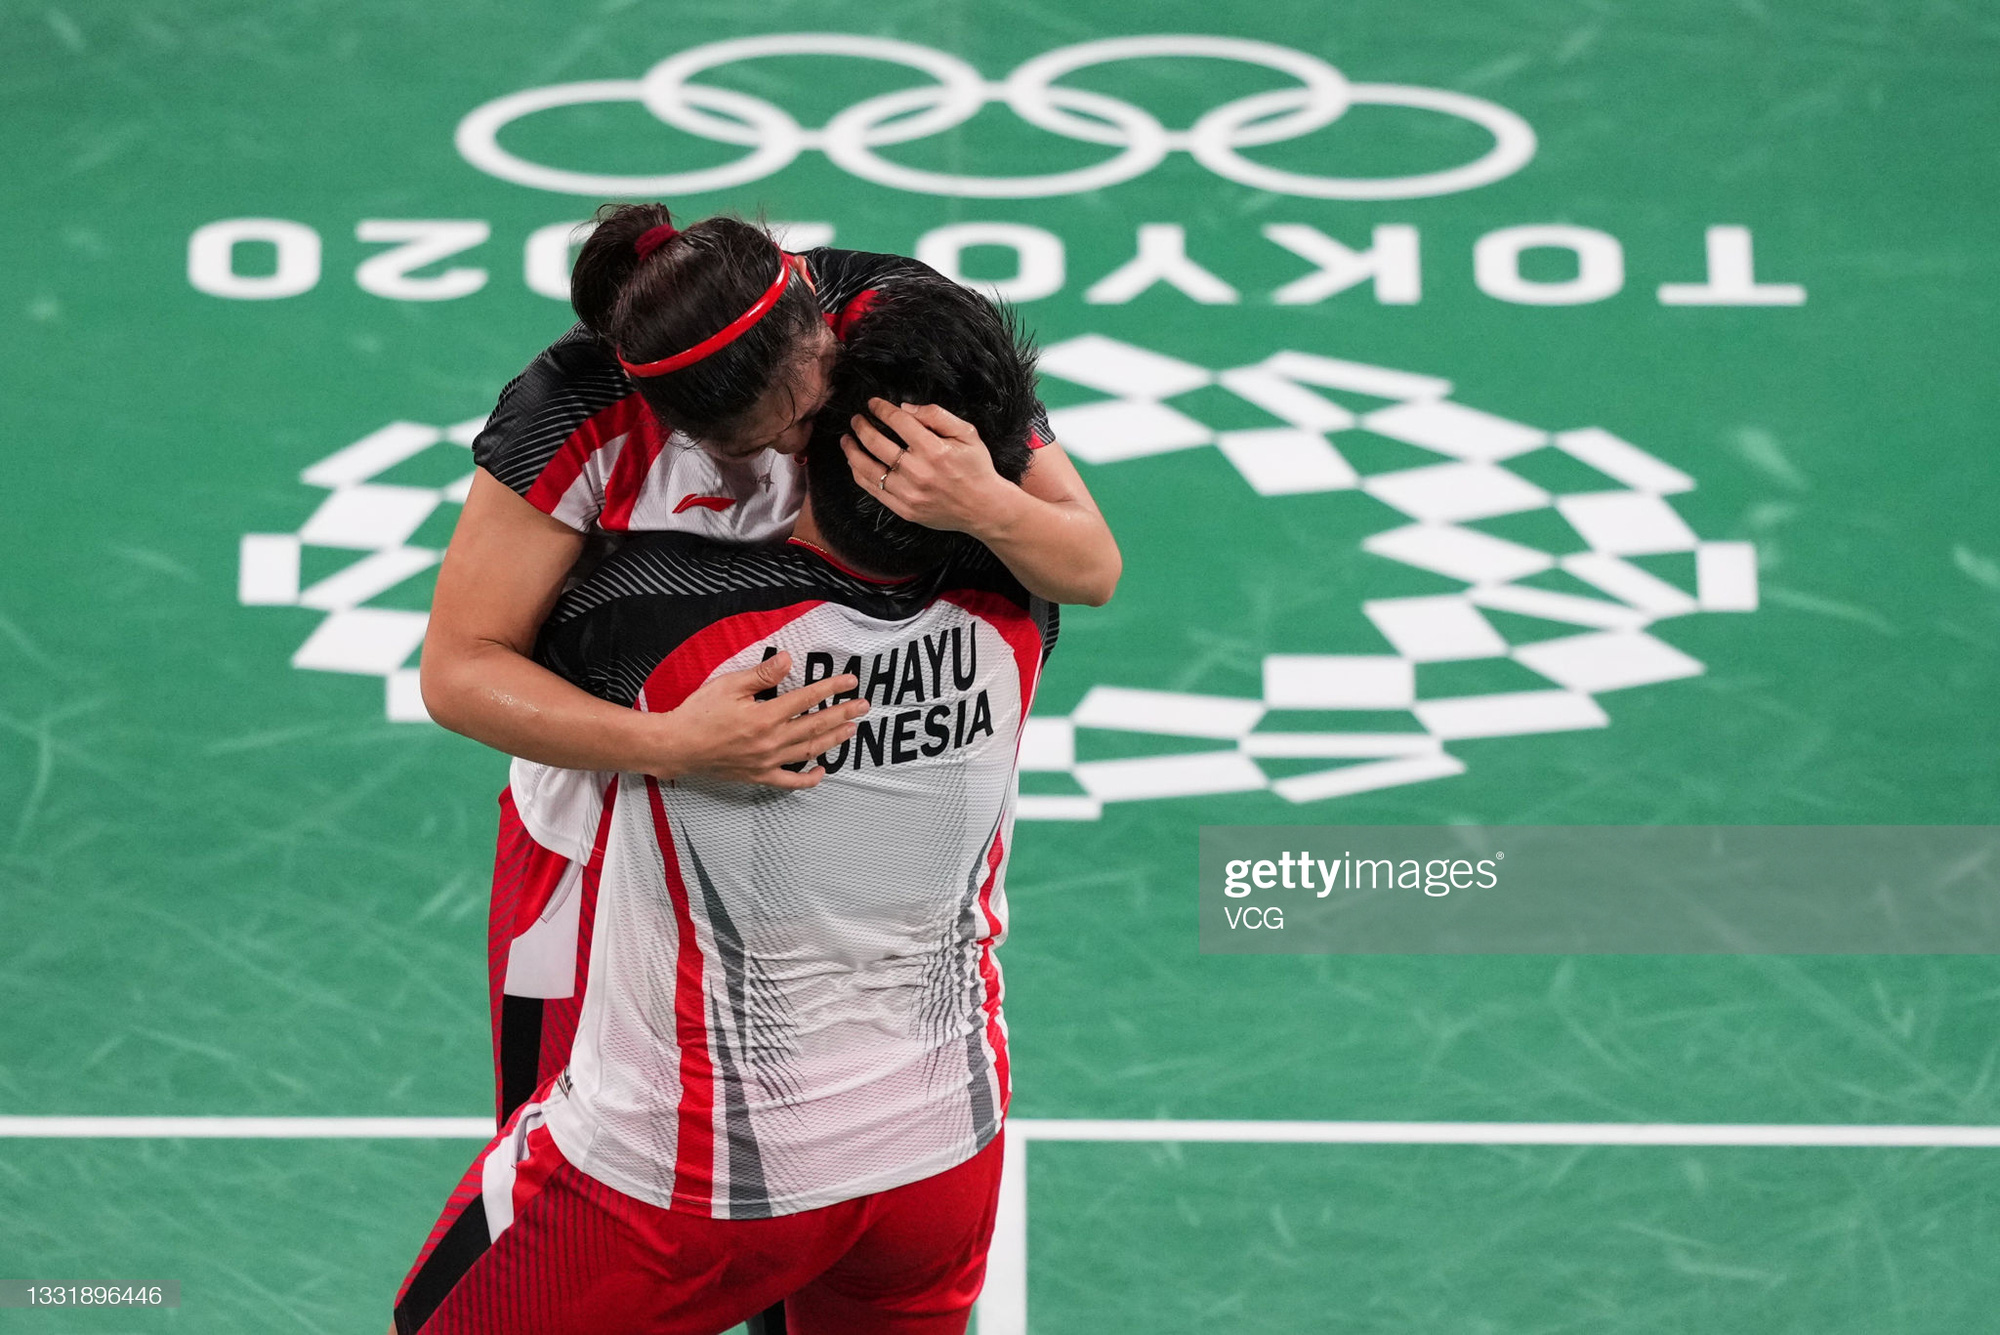 Sau bùng nổ trên sân, cặp đôi HCV Olympic cầu lông của Indonesia cúi người tỏ lòng biết ơn đầy xúc động - Ảnh 2.